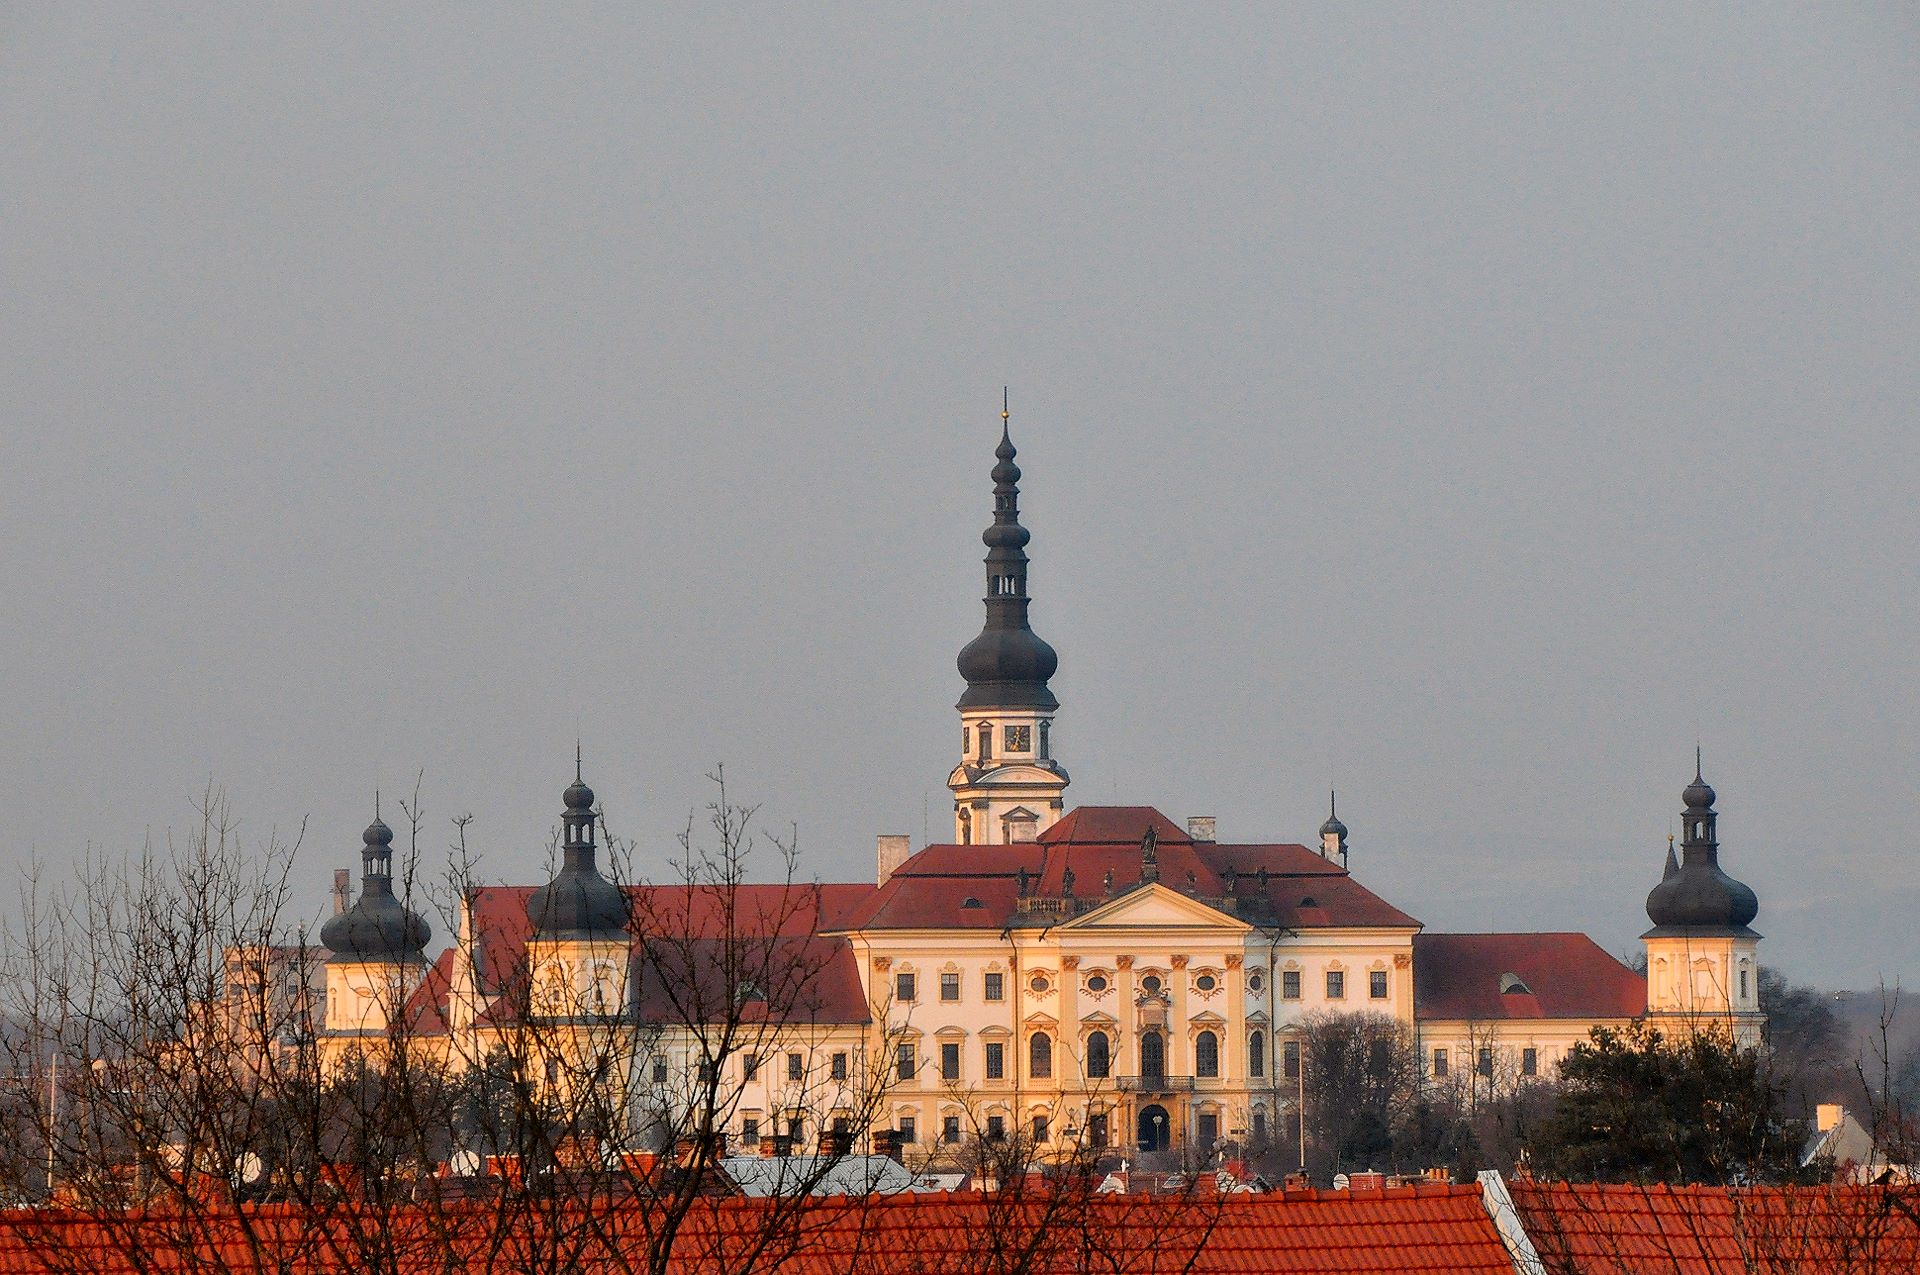 durchs Fenster blickt man zum Kloster Hradisko, eine ehemalig Benediktinerabtei aus dem 17. Jhdt. am Stadtrand von Olmütz